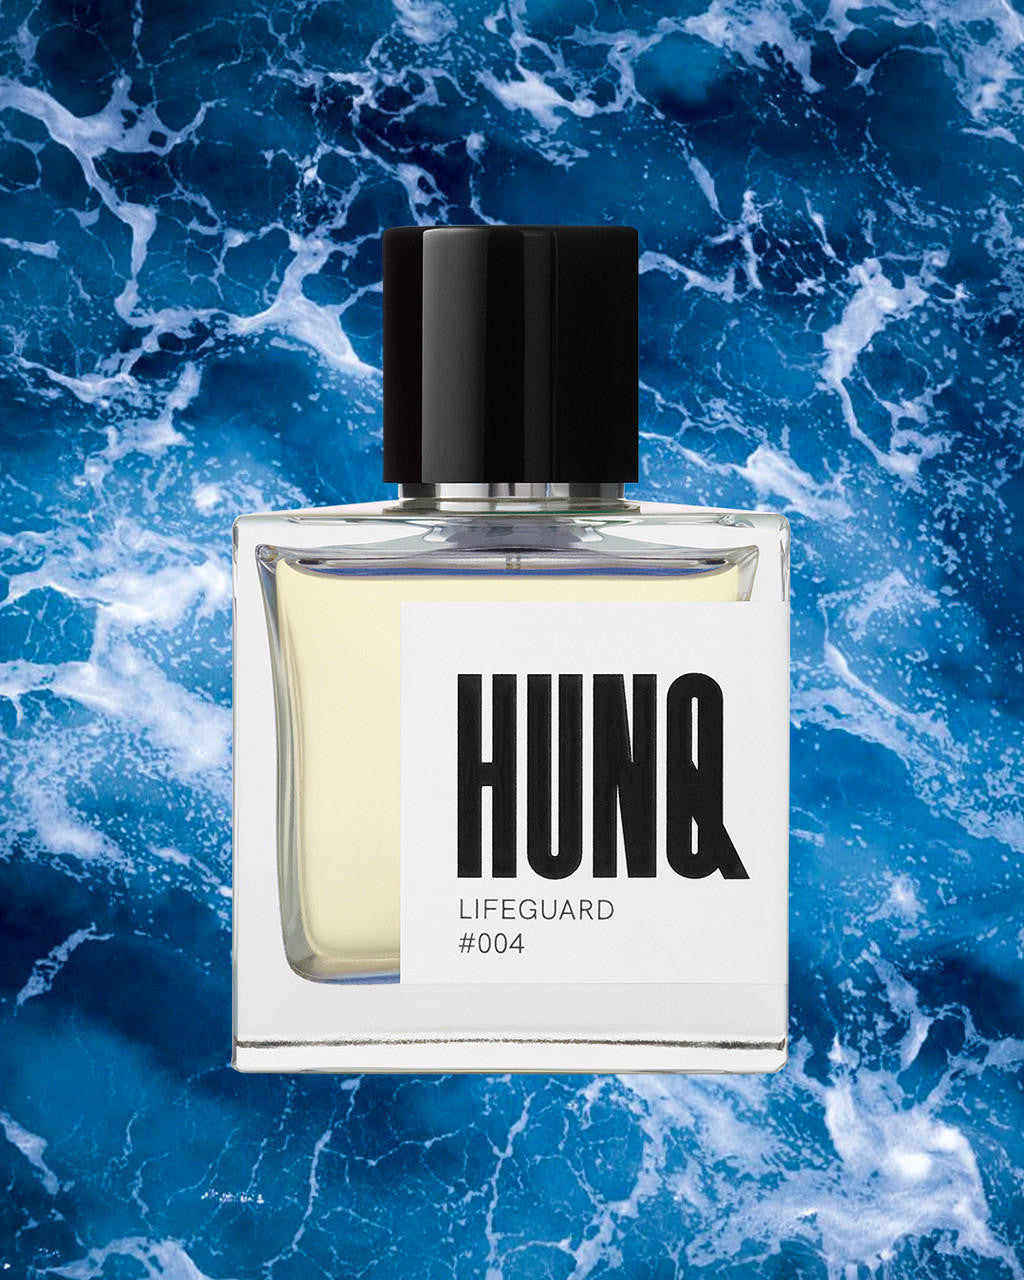  HUNQ #004 Lifeguard Eau de Parfum 